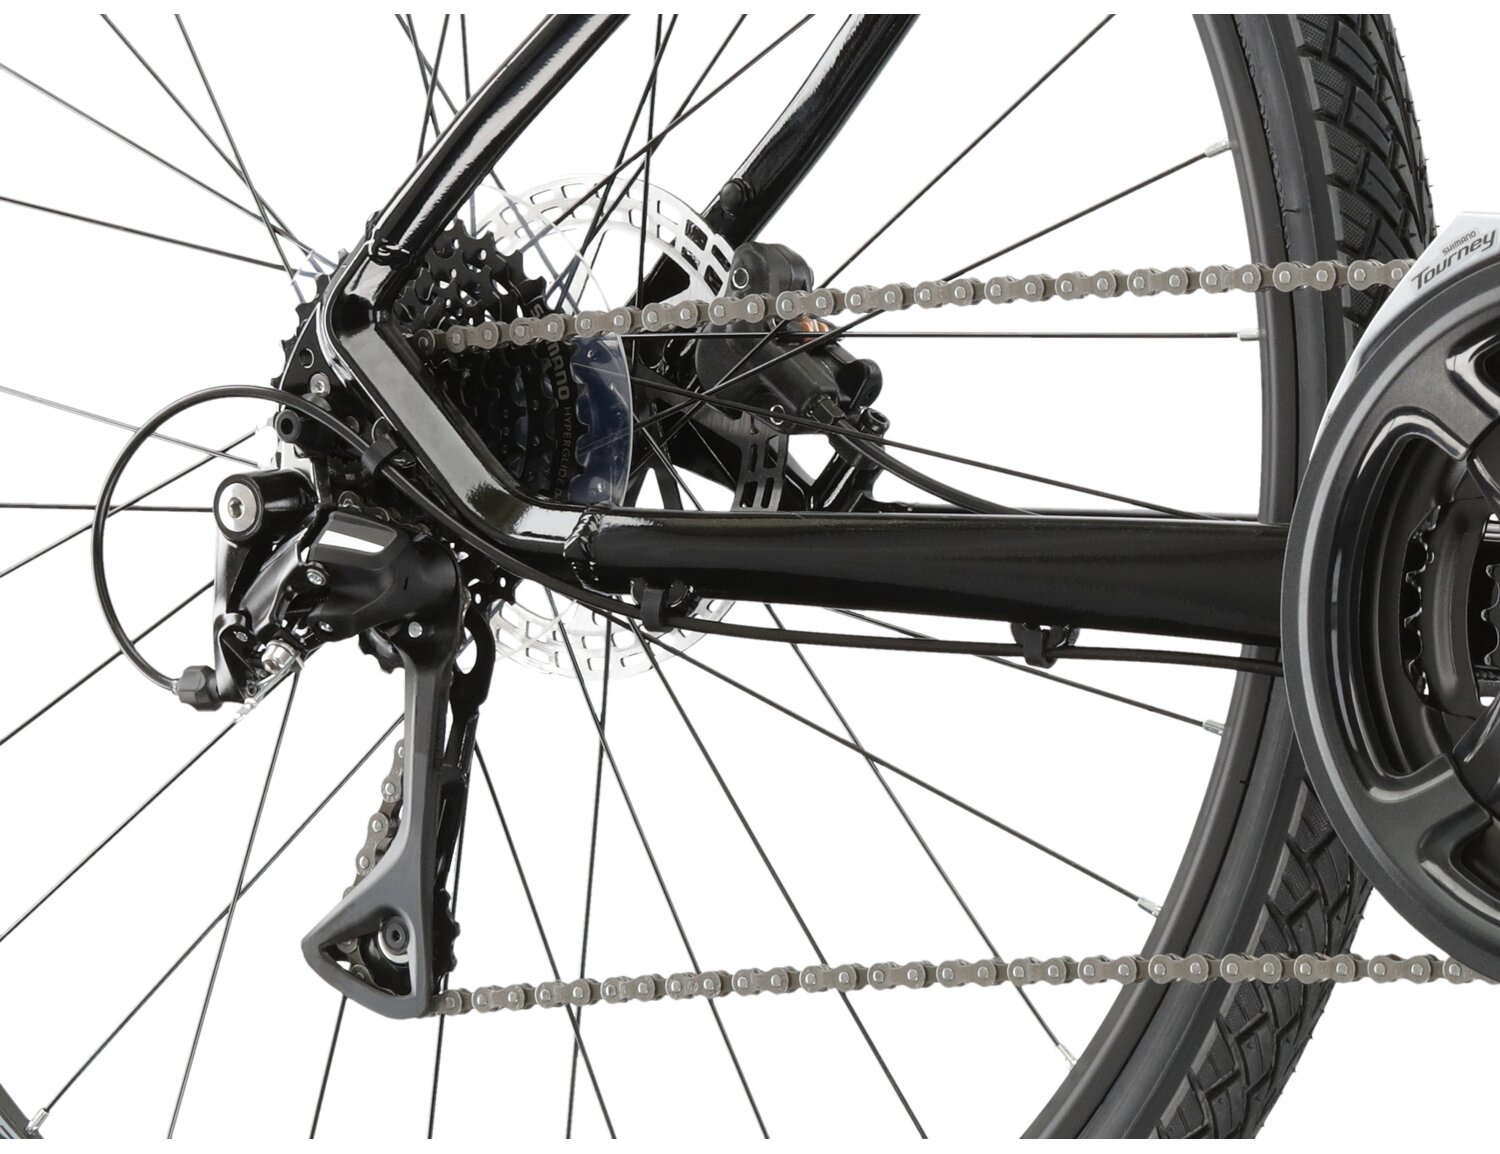  Tylna ośmiobiegowa przerzutka Shimano Acera M3020 oraz hydrauliczne hamulce tarczowe Radius w rowerze crossowym damskim KROSS Evado 4.0 